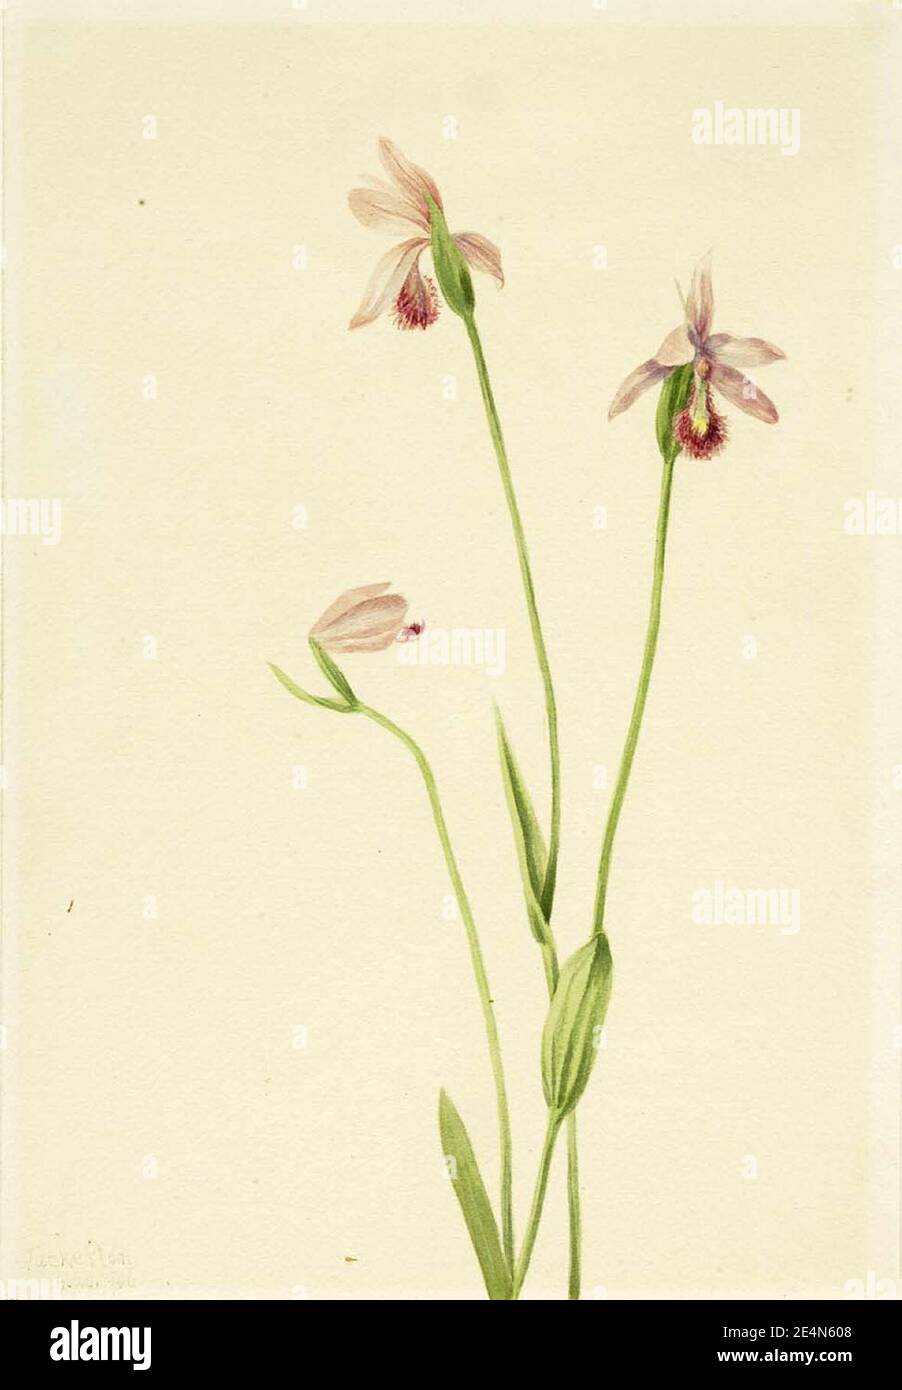 Mary Vaux Walcott - Rose Pogonia (Pogonia ophioglossoides) Stock Photo